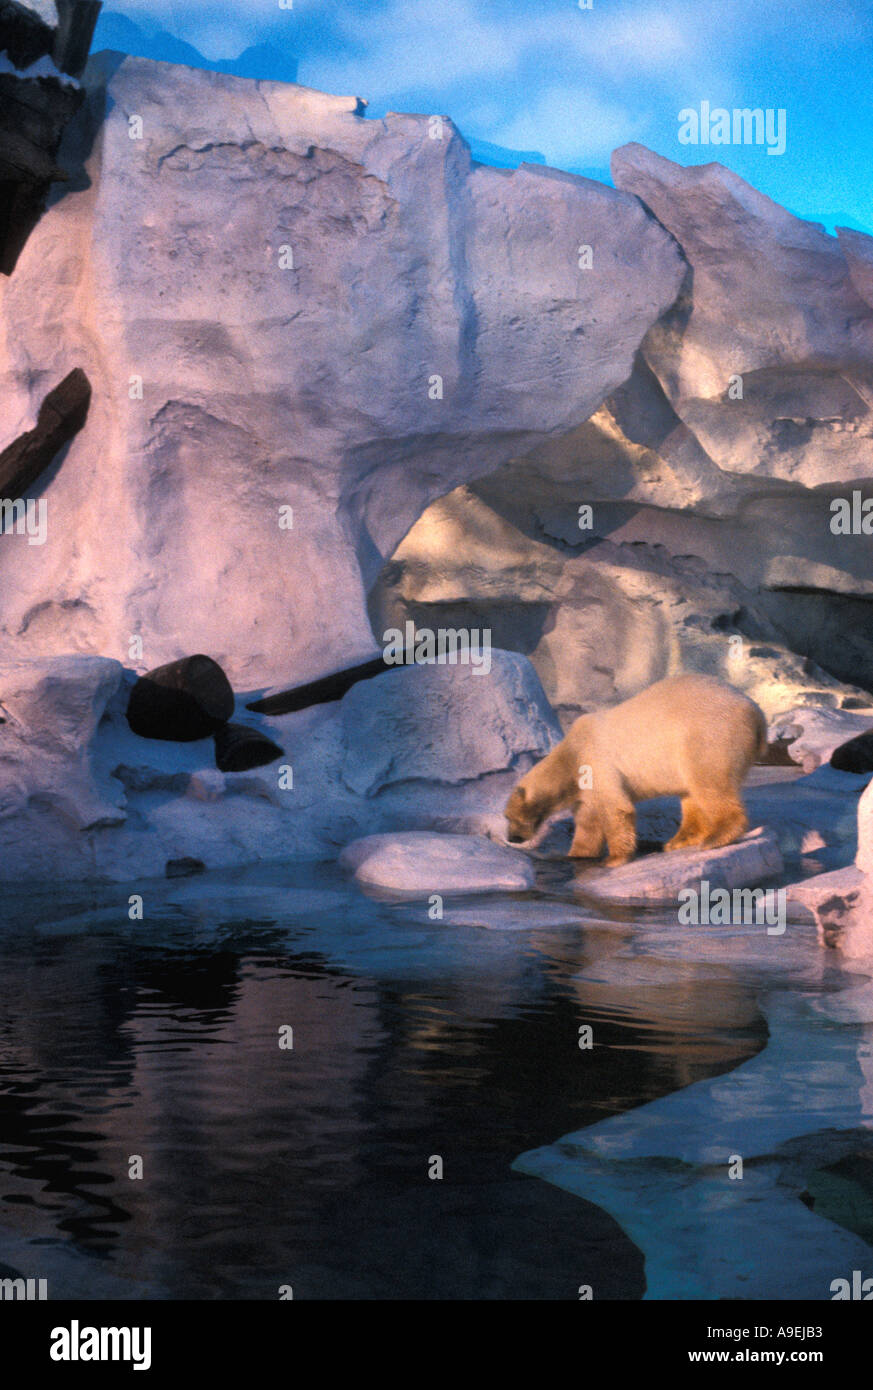 Orlando Florida USA Attractions Sea World Adventure Park Polar Bear Exhibit Stock Photo